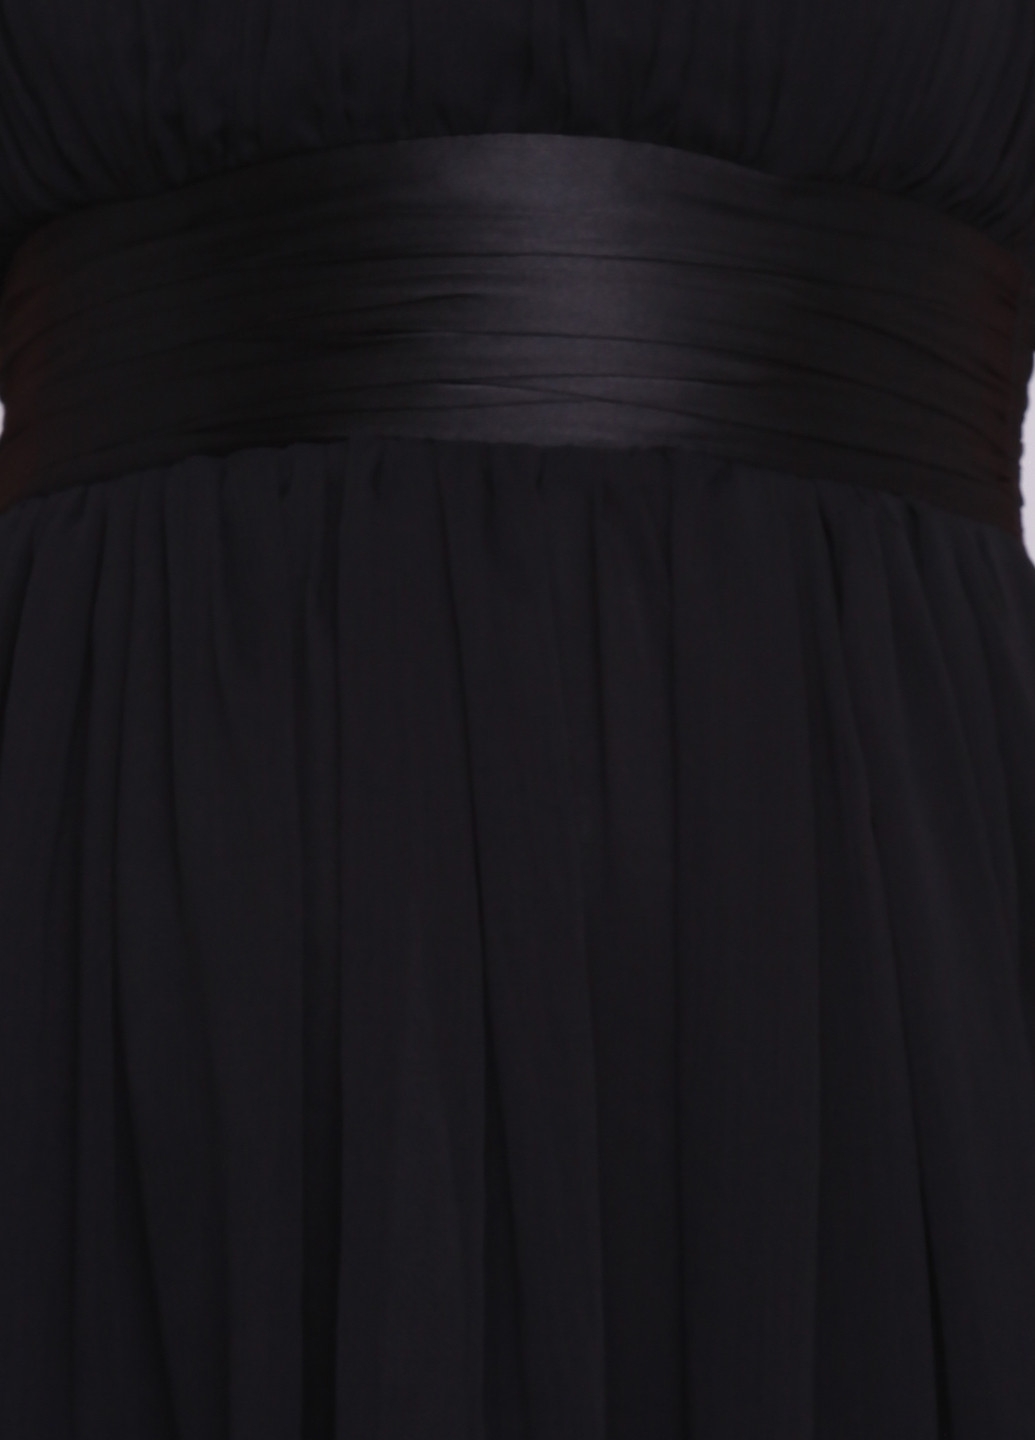 Черное коктейльное платье бандо New Look однотонное